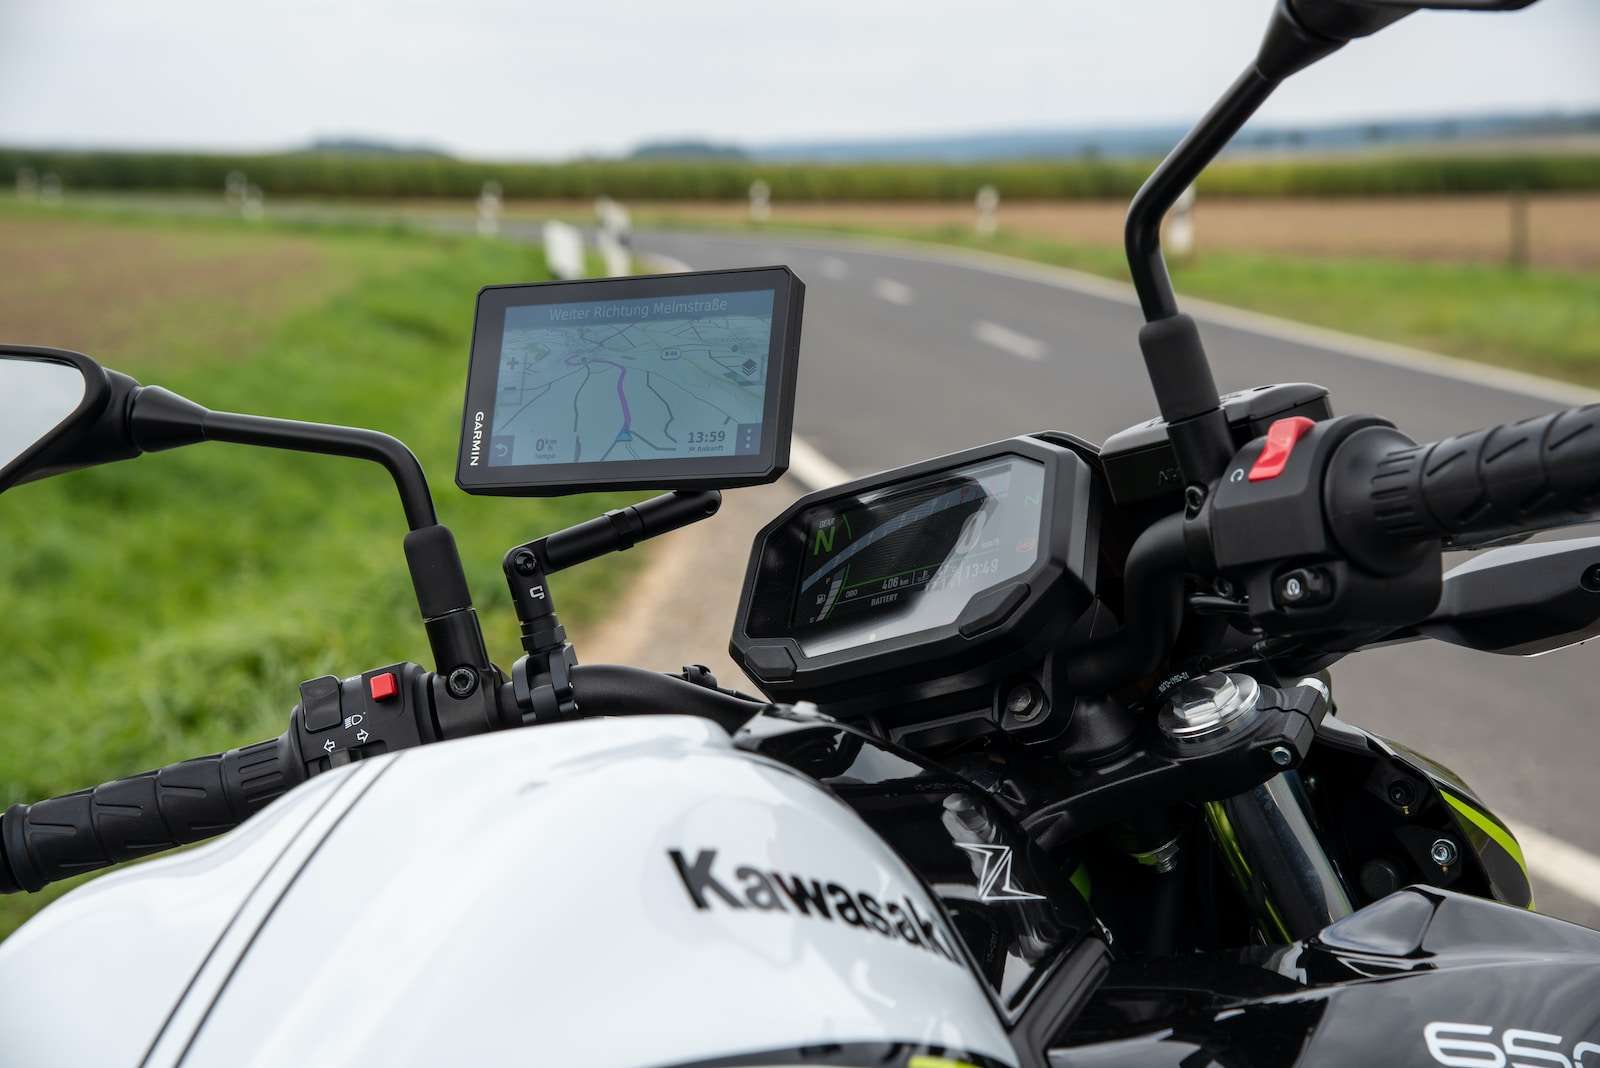 Comparatif des meilleurs GPS pour moto